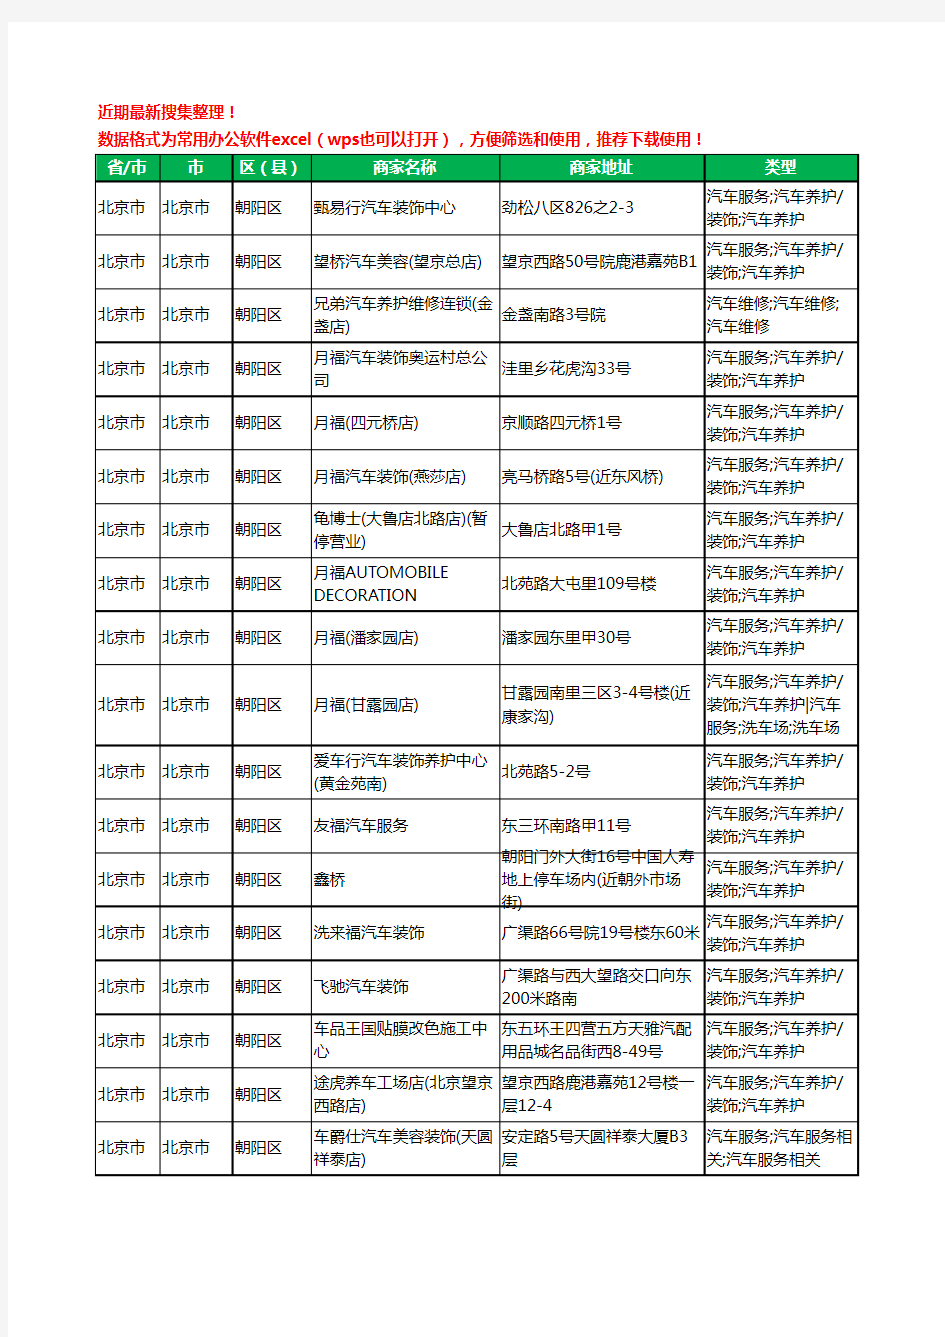 2020新版北京市北京市朝阳区汽车装饰工商企业公司商家名录名单黄页联系方式大全338家